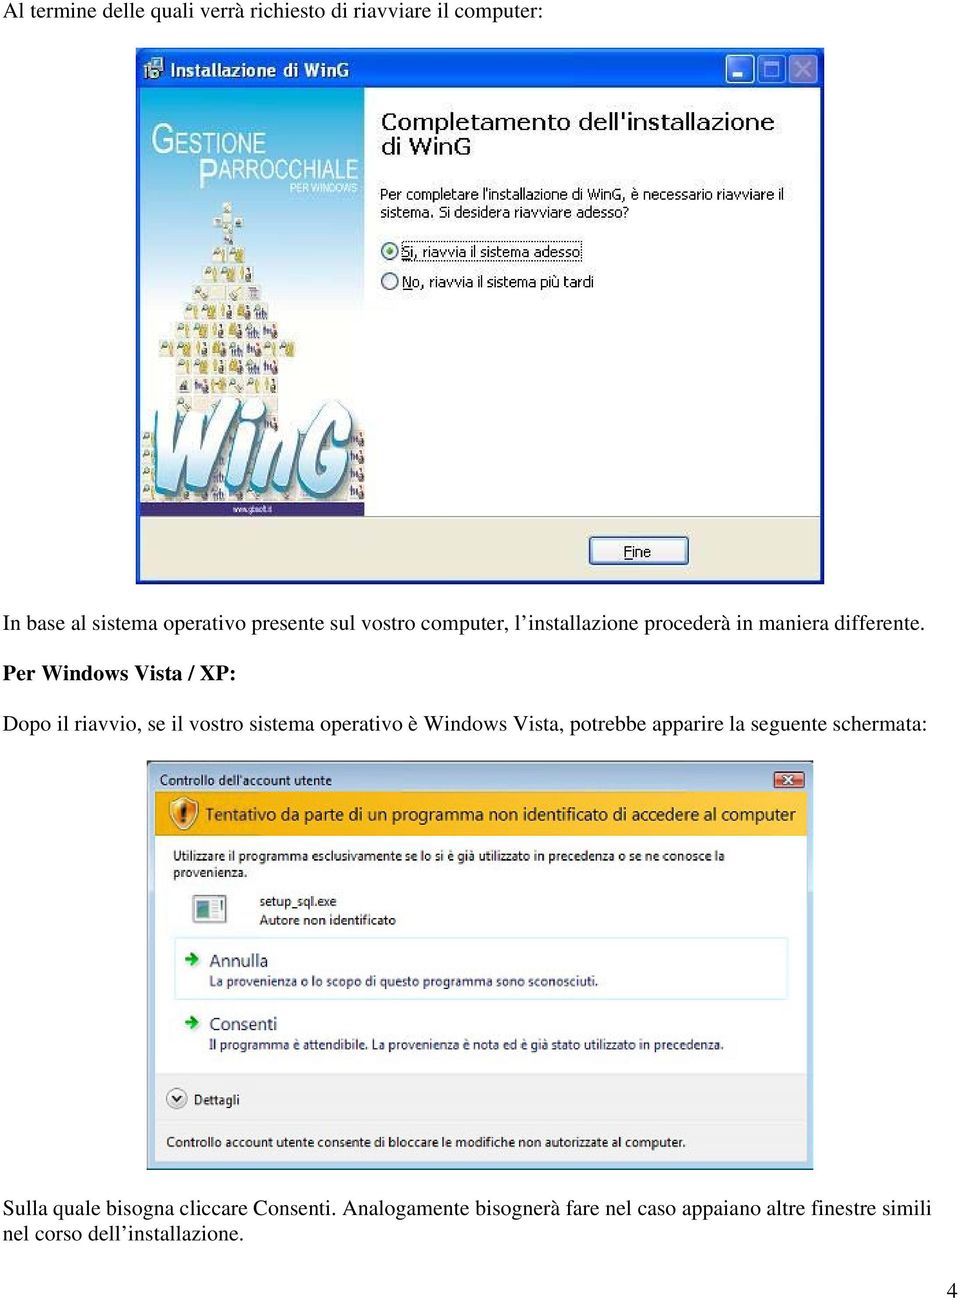 Per Windows Vista / XP: Dopo il riavvio, se il vostro sistema operativo è Windows Vista, potrebbe apparire la